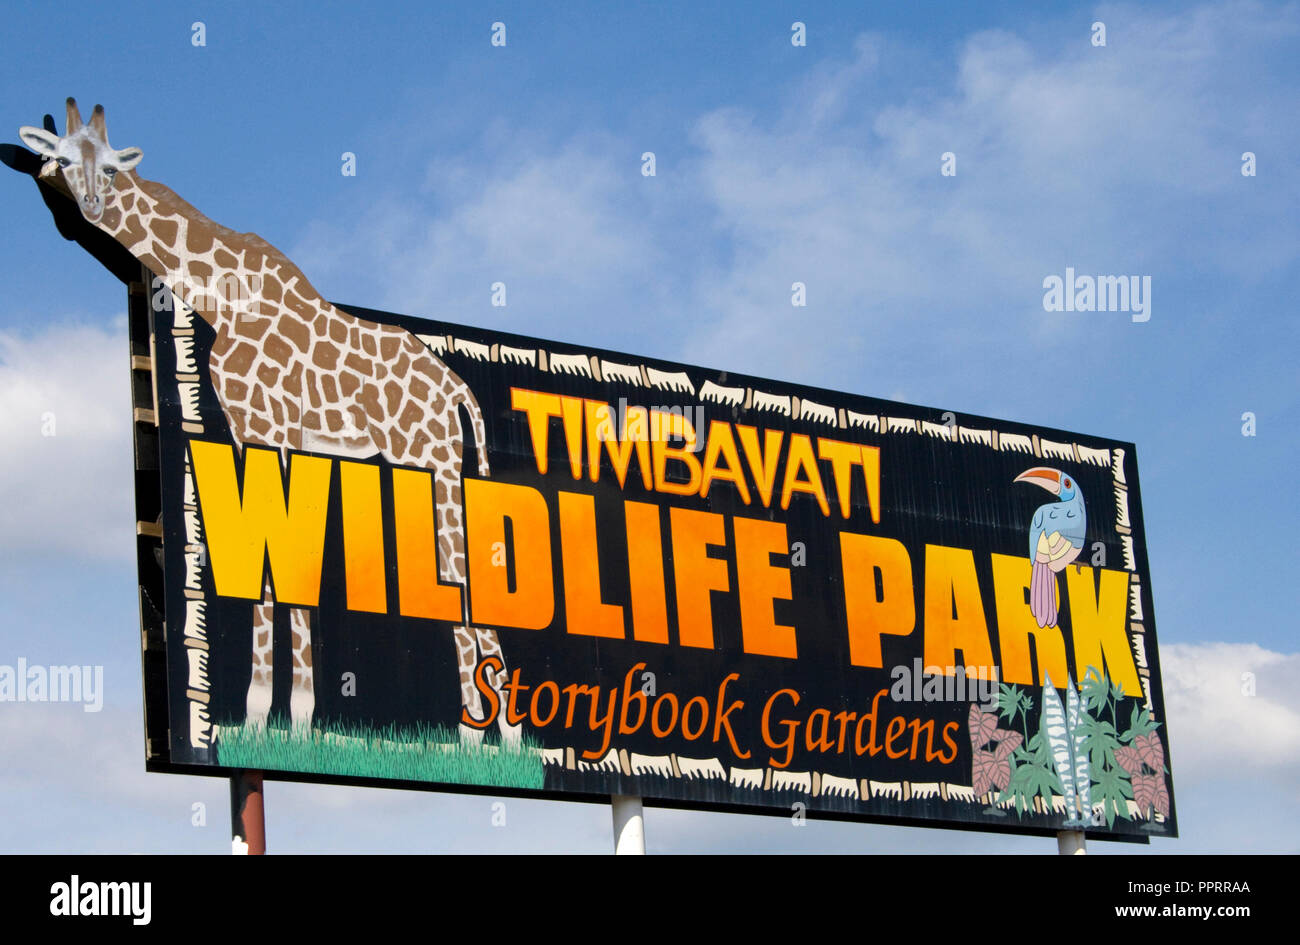 Grande segno di affissioni promuovere Timbavati Wildlife Park e Storybook Garden home a 400 animali e 70 specie. Wisconsin Dells WI Wisconsin USA Foto Stock